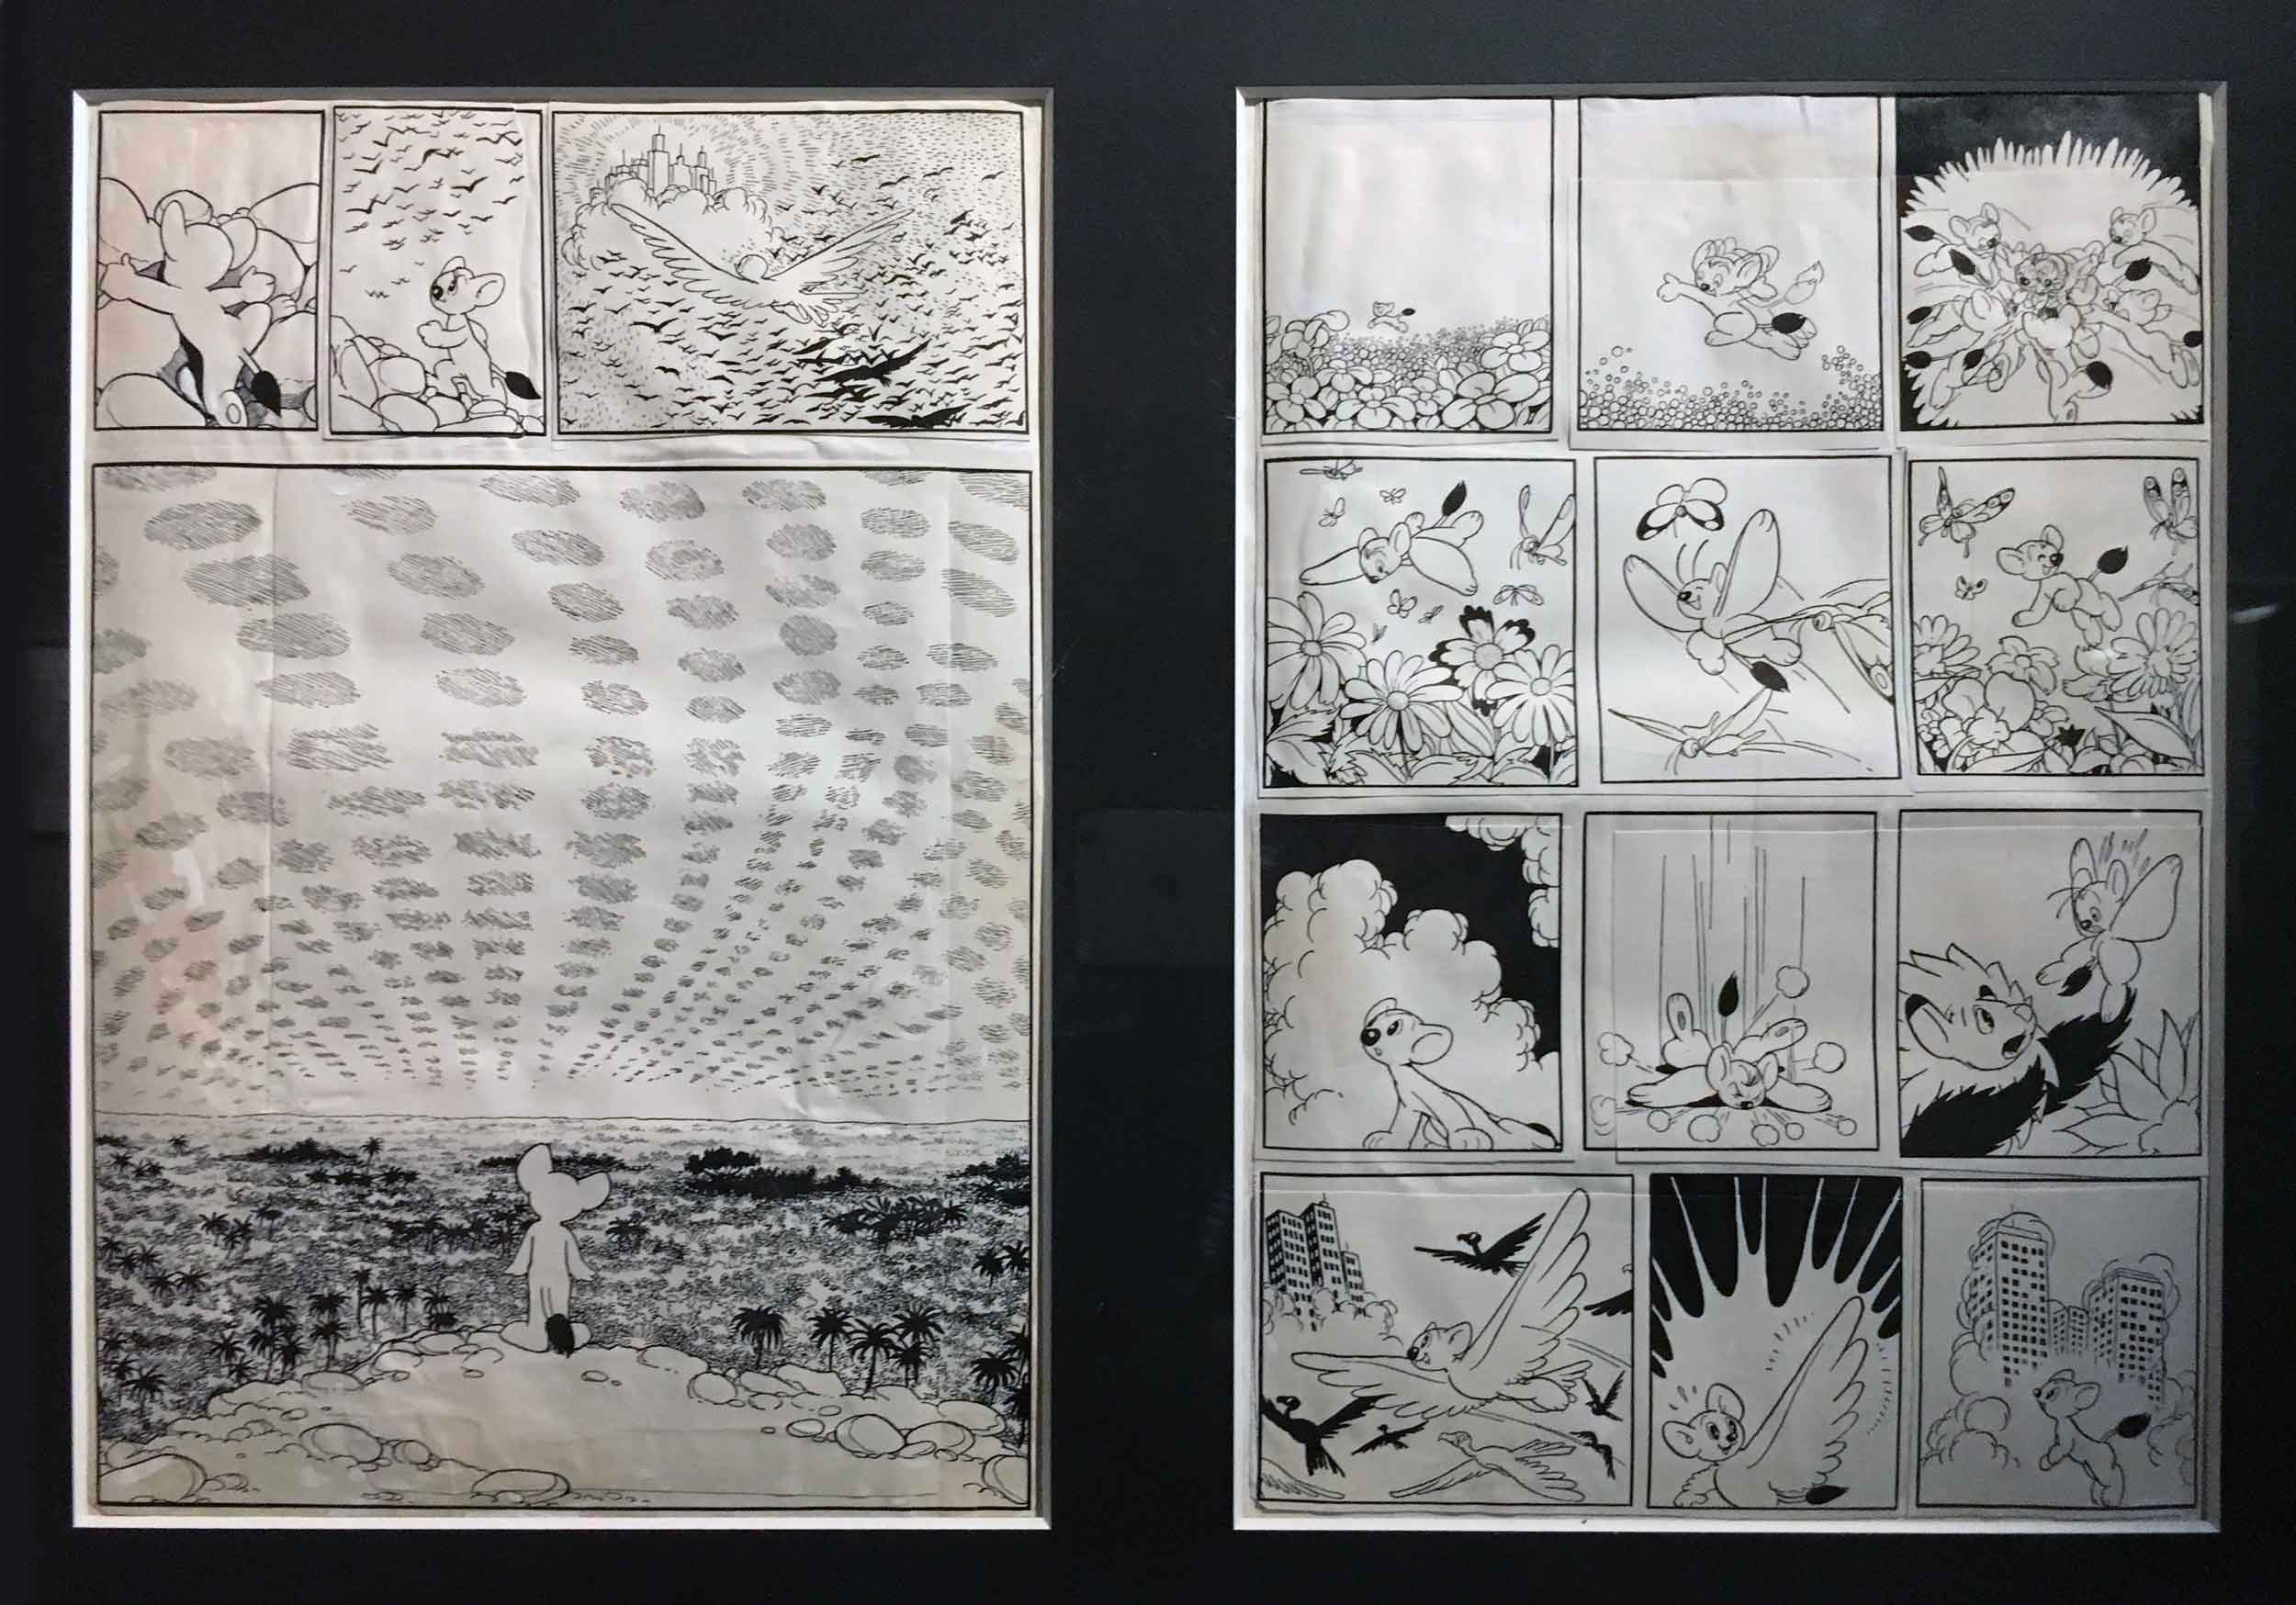 Le public ne le savait peut-être pas, mais il existe six versions différentes «du manga « Le Roi Léo ». À l’instant d’Hergé, Tezuka a peaufiné son œuvre au fil de sa carrière afin d’offrir des séries à même de plaire à ses contemporains. Au-dessus des quelques planches originales présentées, une chorologie illustrée montrait le cheminement de cette œuvre à travers les époques.